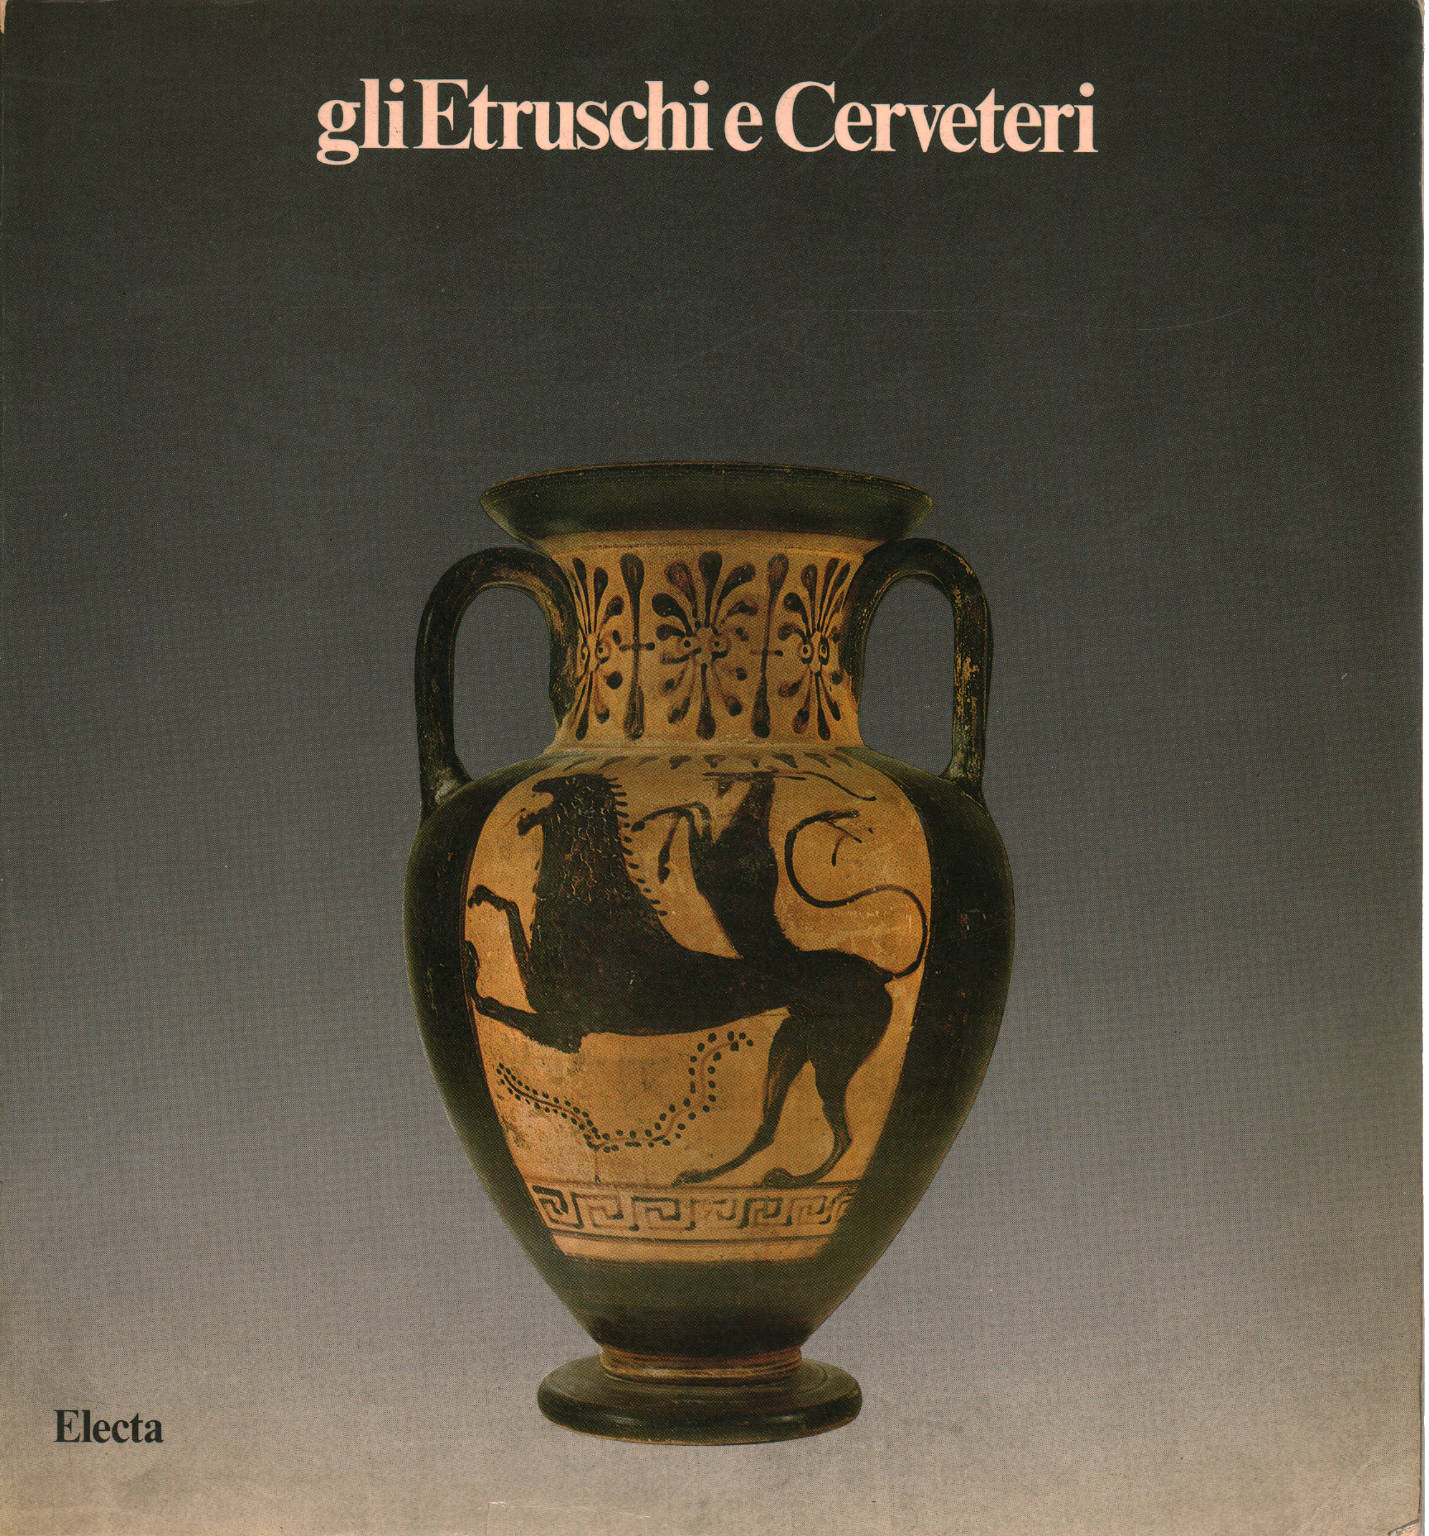 Gli Etruschi e Cervereti, s.a.